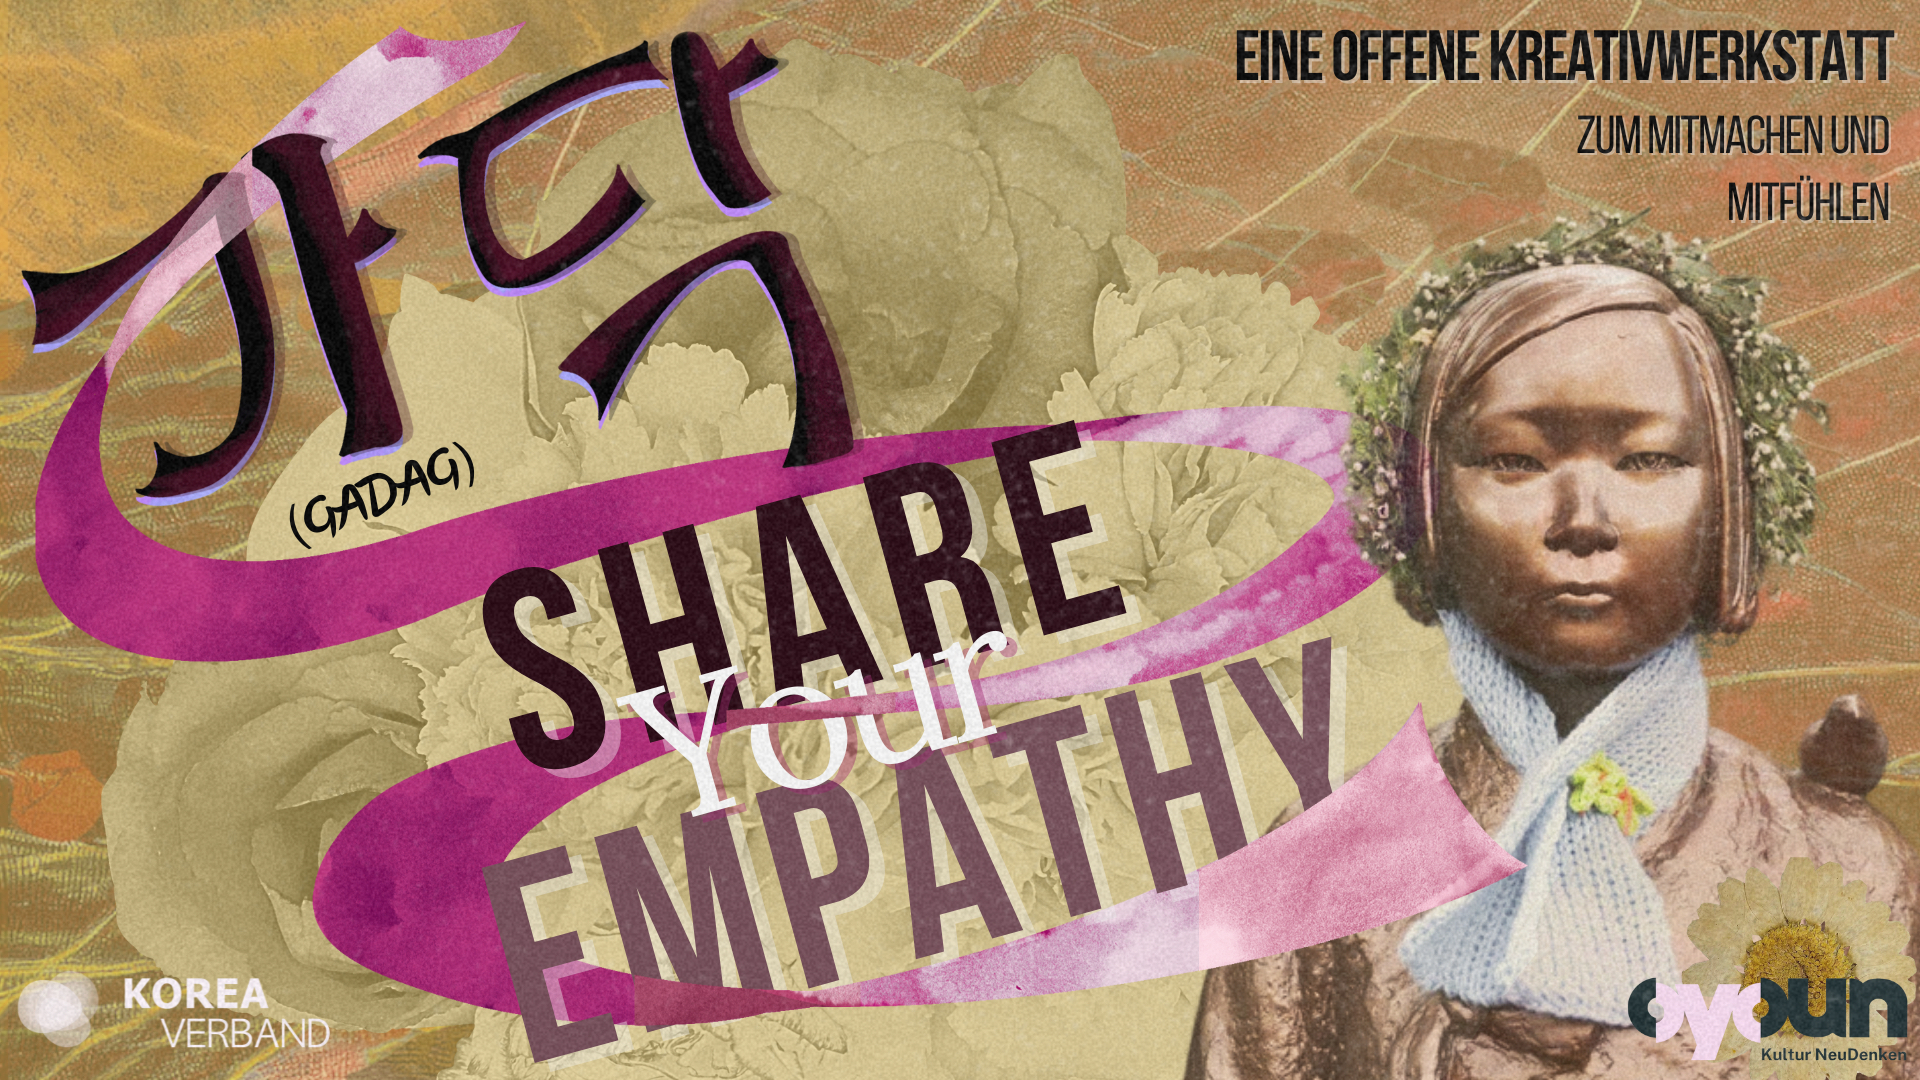 Español: Afiche del taller creativo con un personaje histórico y texto "Share Your Empathy". Alemán: Póster del taller creativo con un personaje histórico y el texto "Comparte tu empatía".